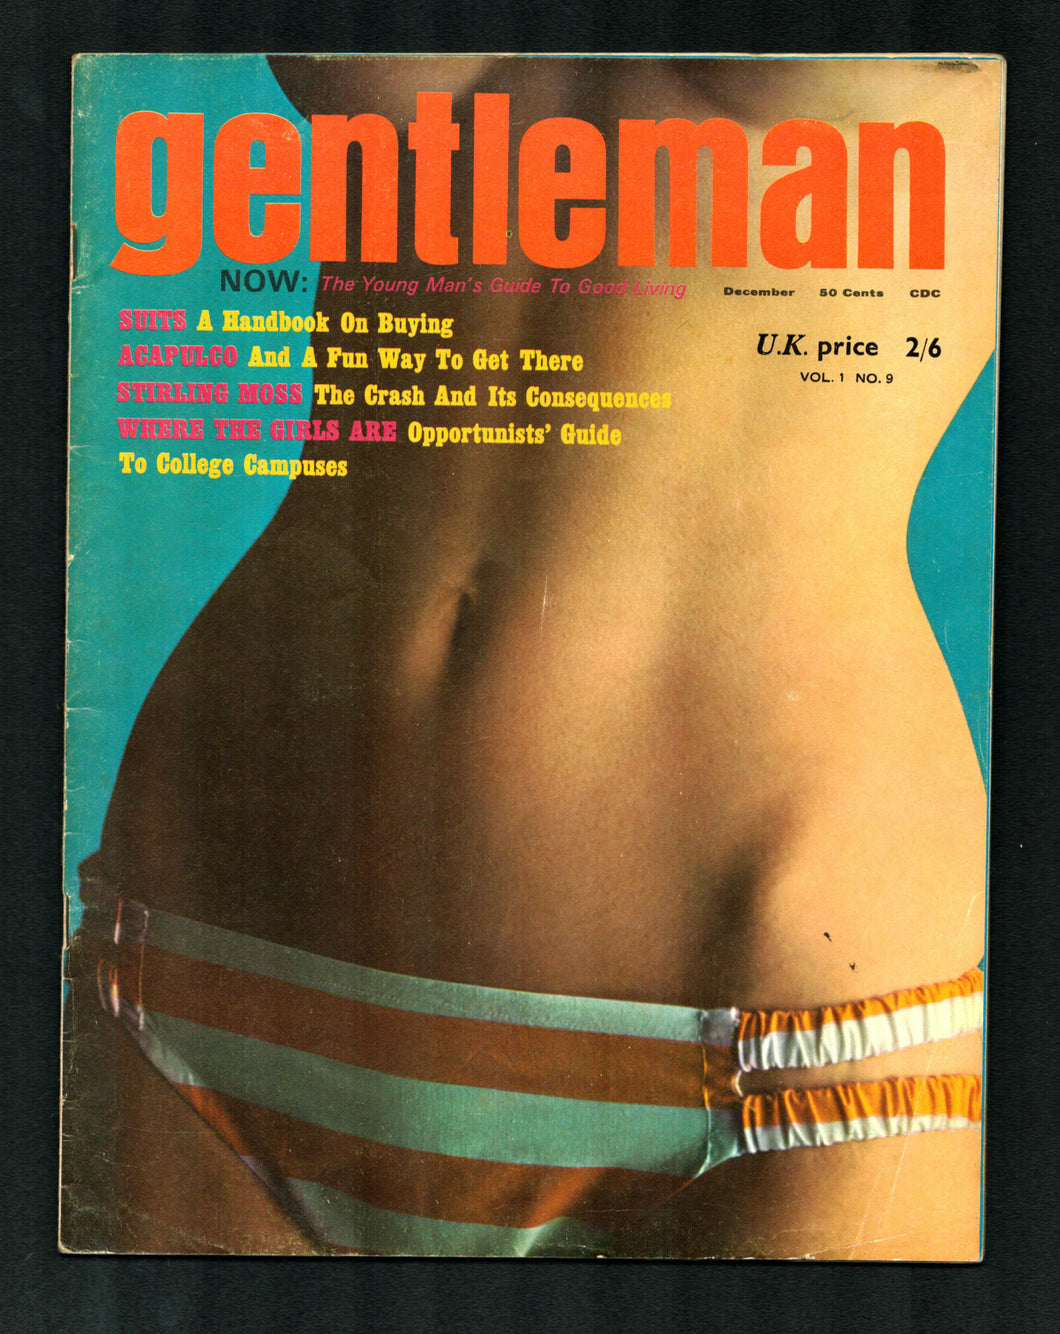 Gentleman Vol 3 No 3 Dec 1962